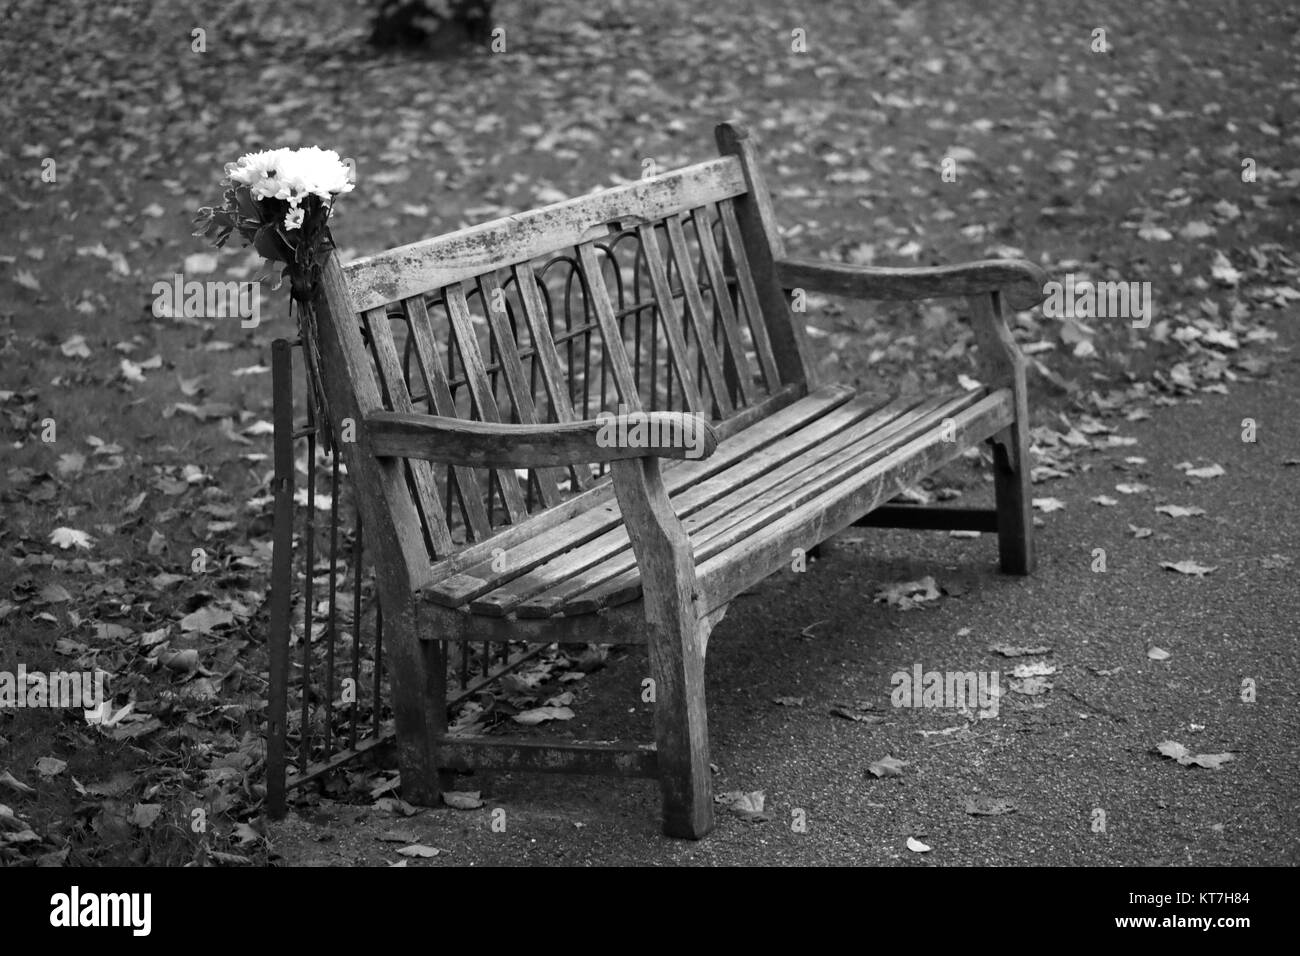 Hyde Park, London, UK Stockfoto